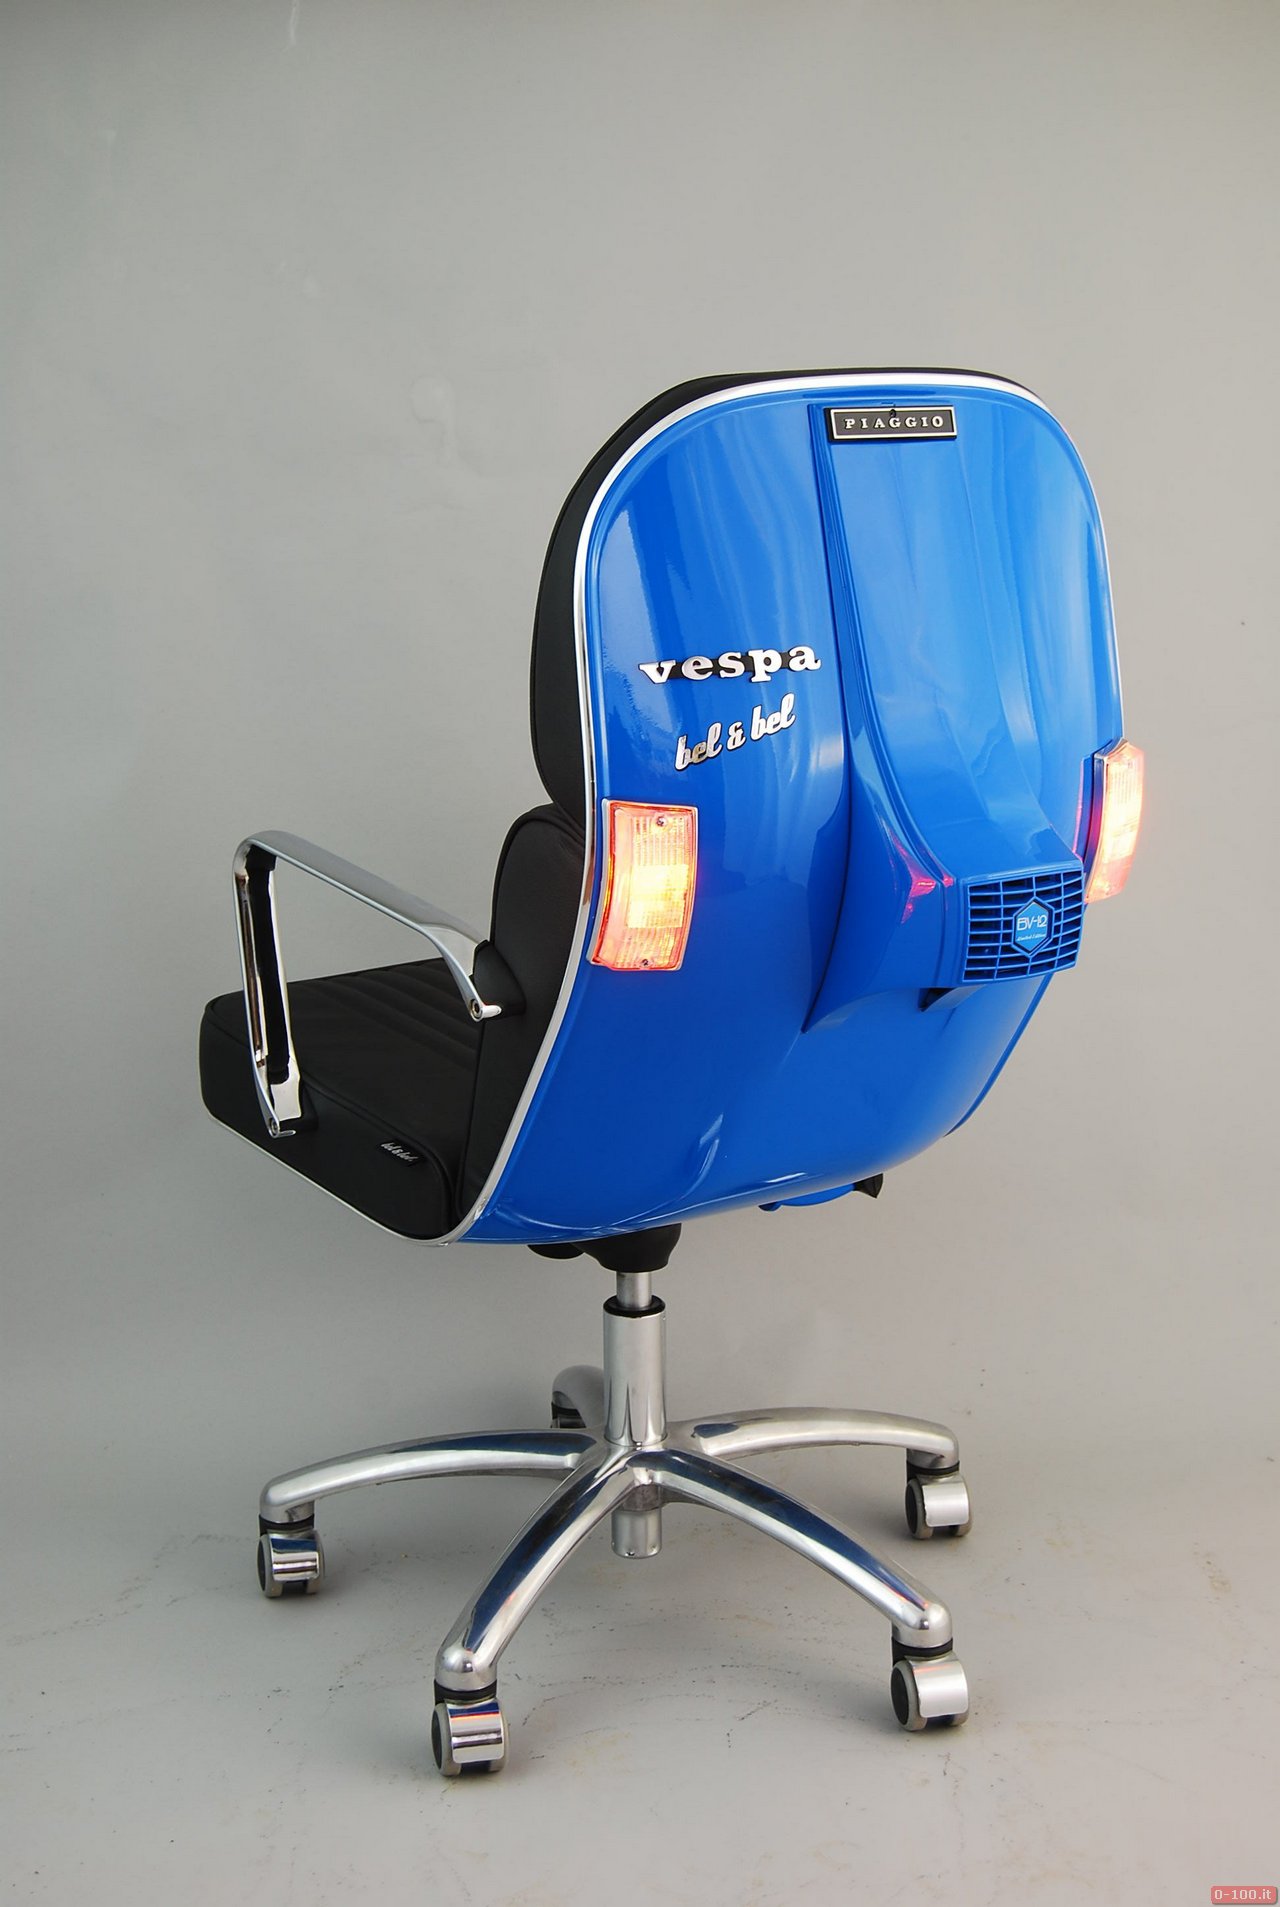 Vespa office chairs by Bel &Bel_0-100_7